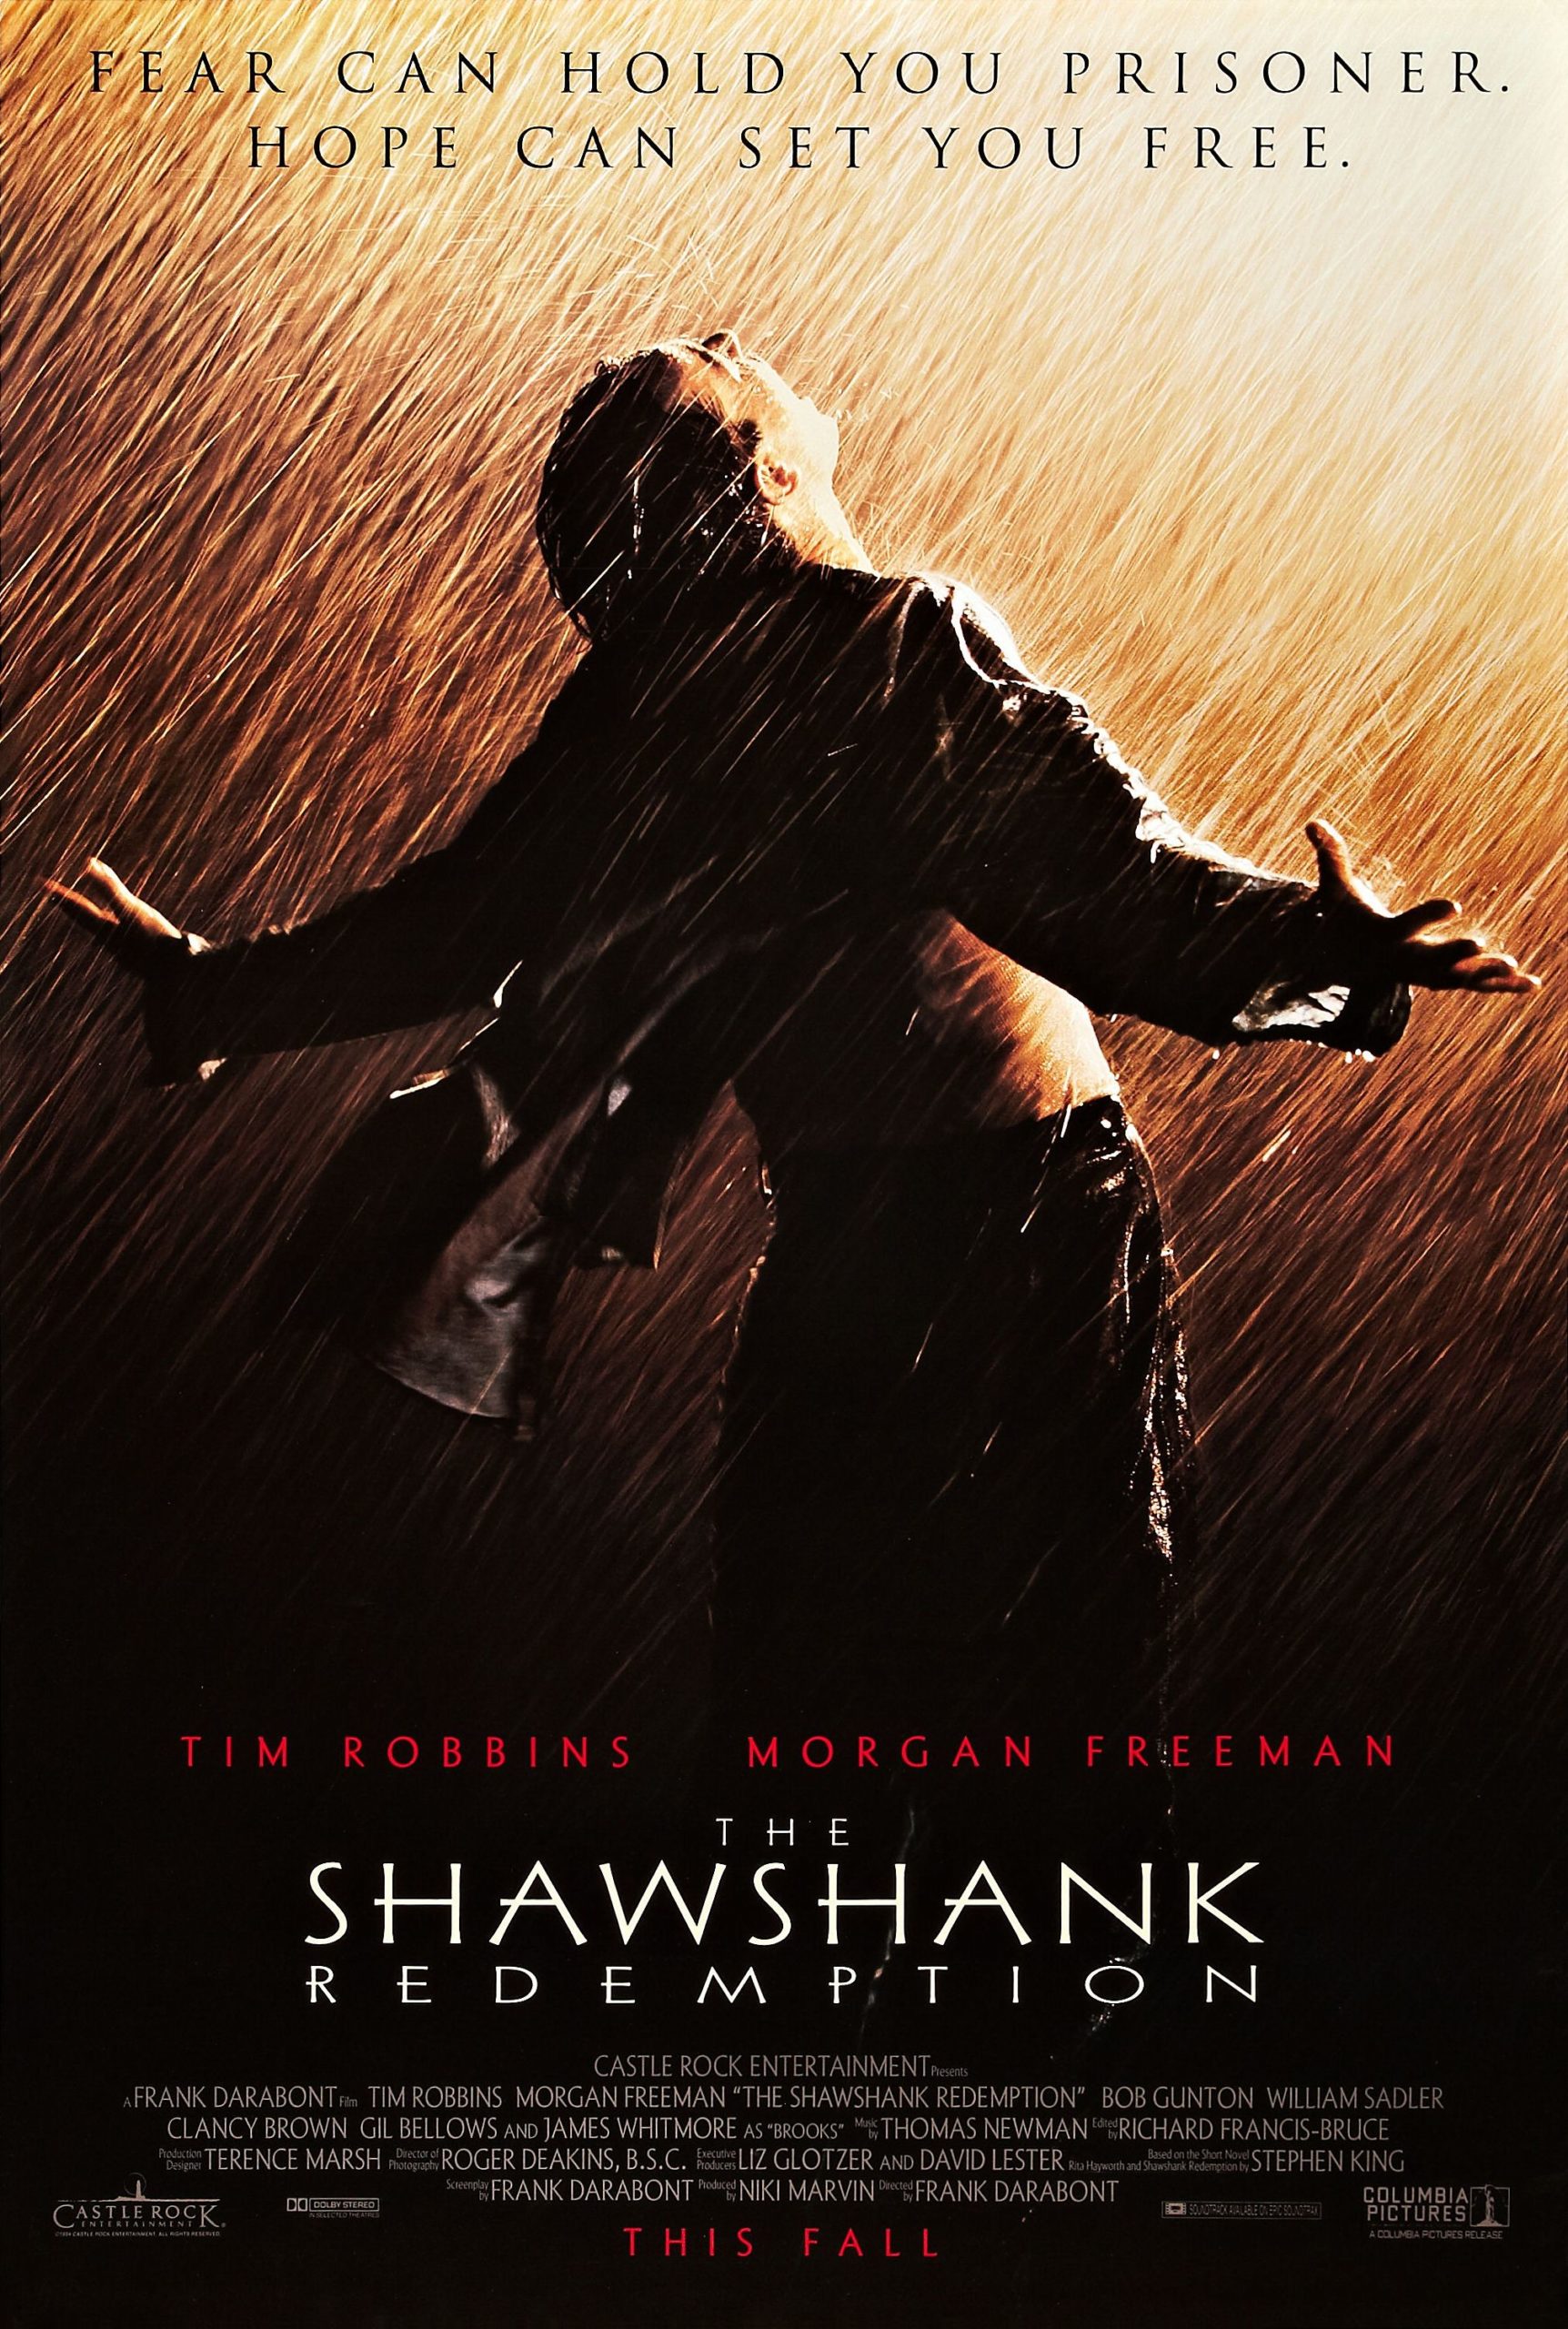 ดูหนังออนไลน์ฟรี The Shawshank Redemption 1994 ชอว์แชงค์ มิตรภาพ ความหวัง ความรุนแรง